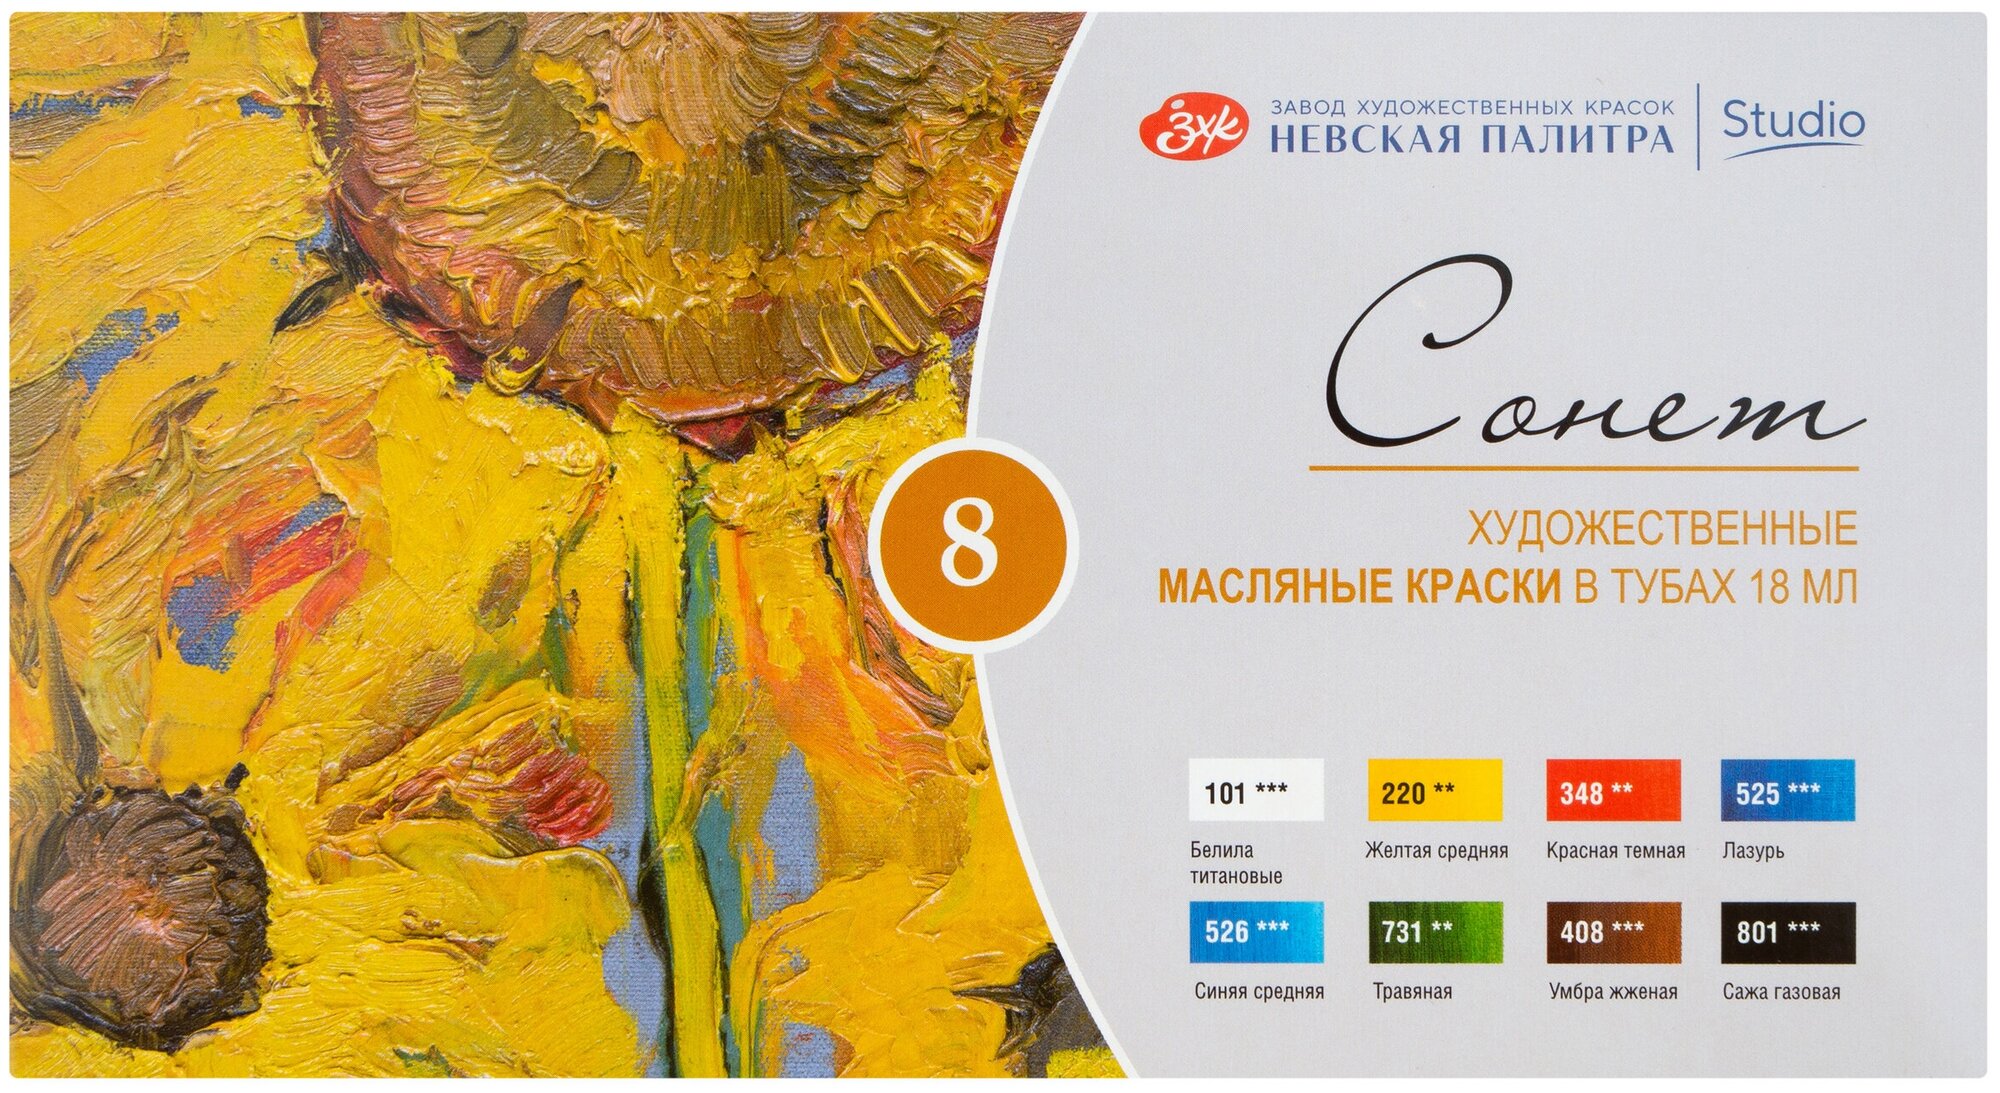 Краски масляные для рисования Невская палитра Сонет, 8 цветов в тубах по 18 мл